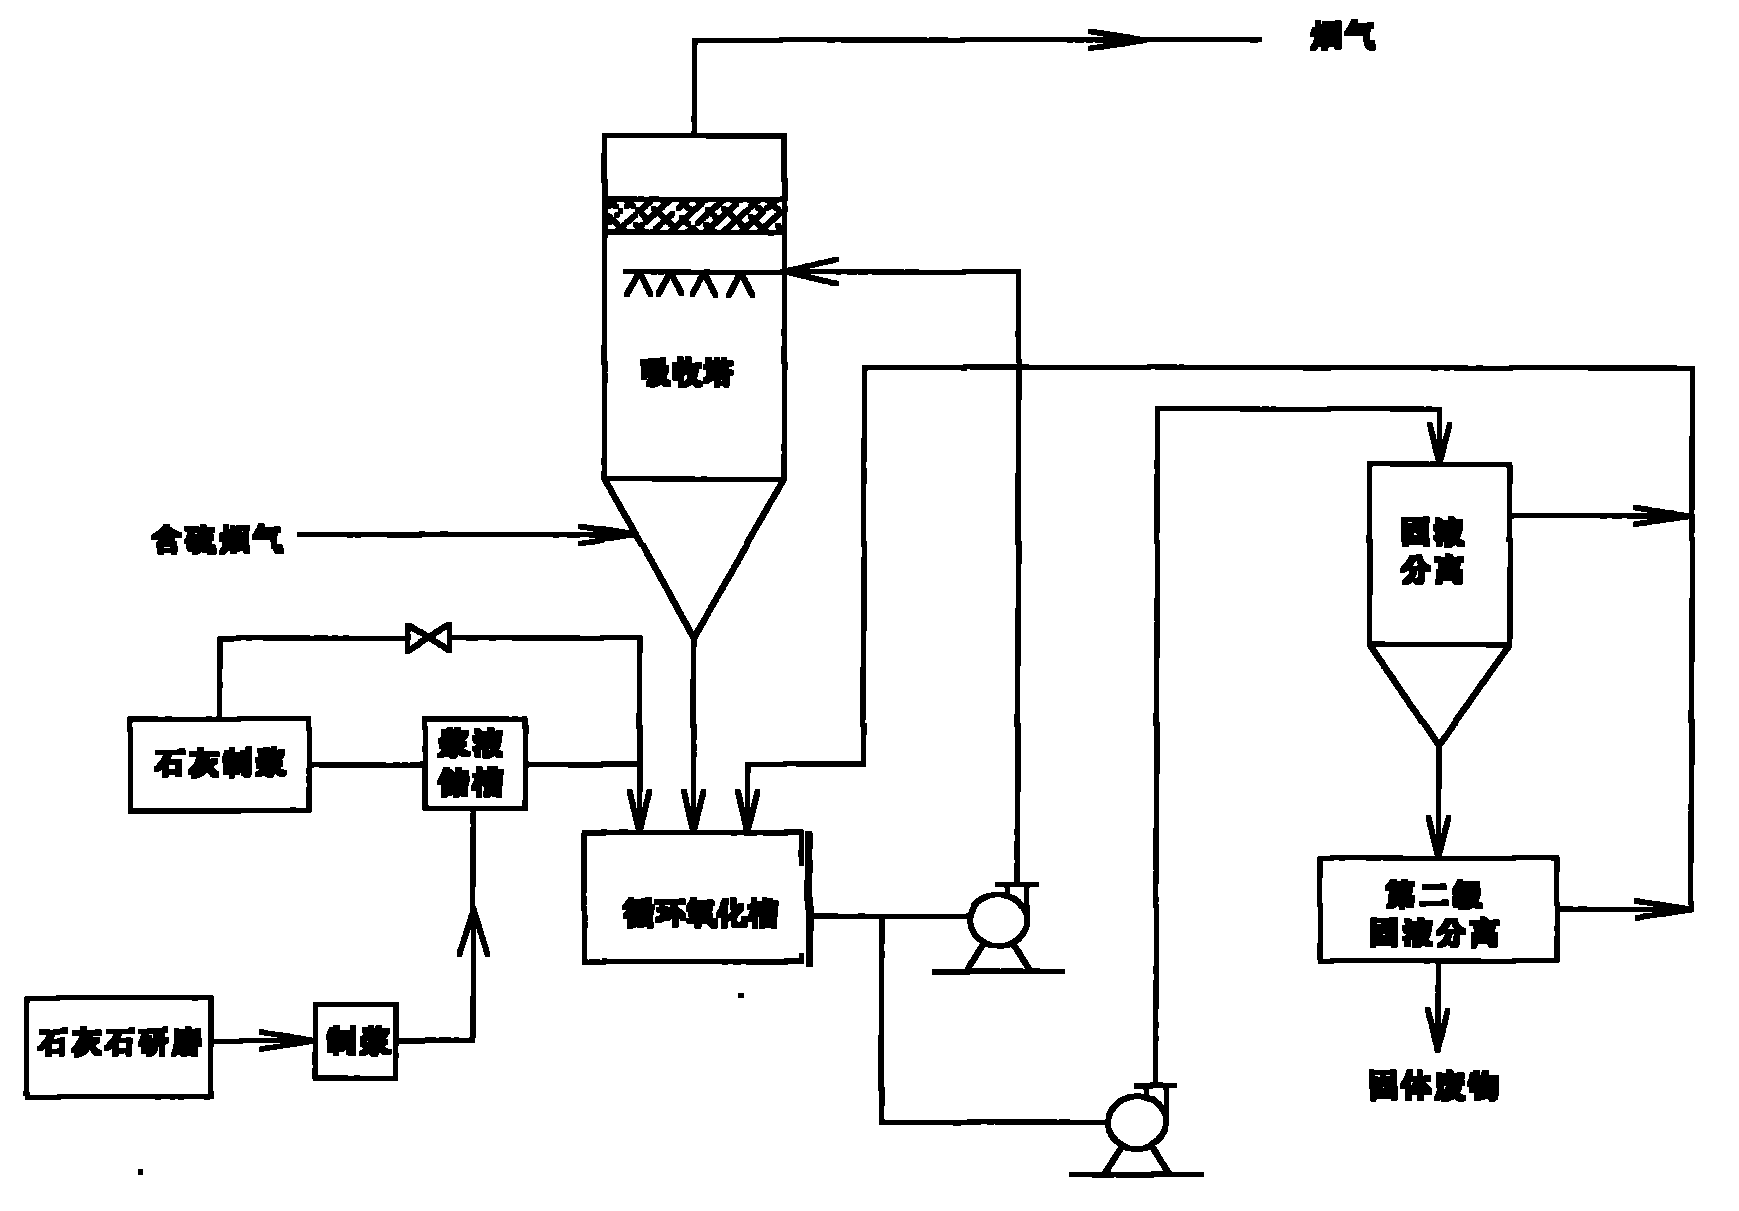 脱硫工艺流程简图图片